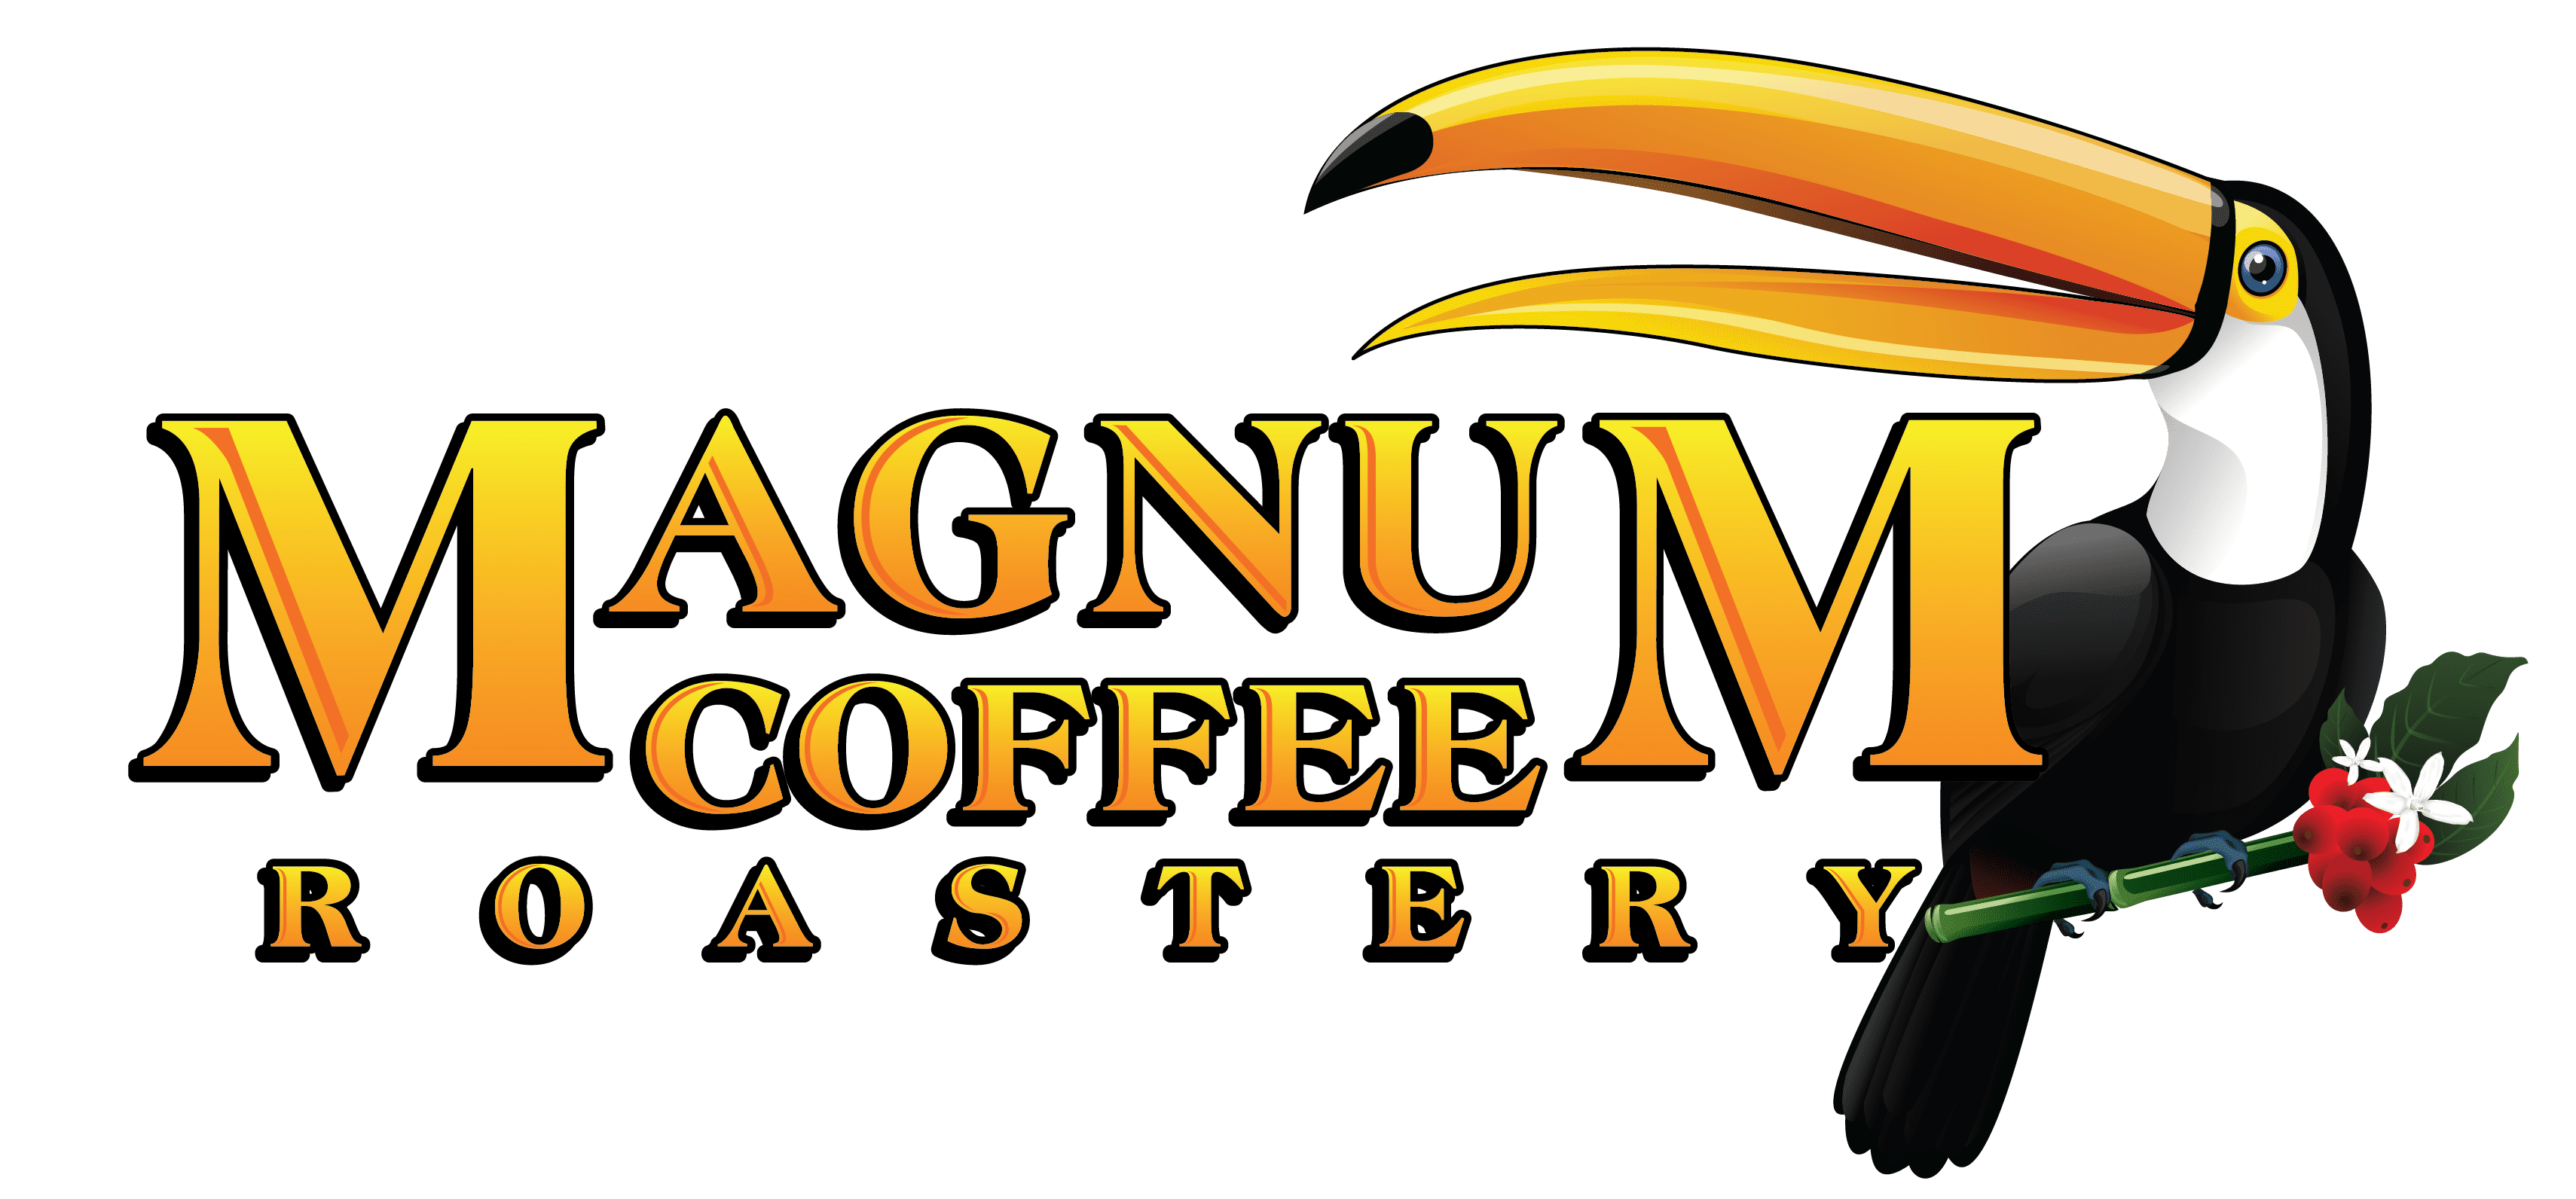 Magnum Coffee